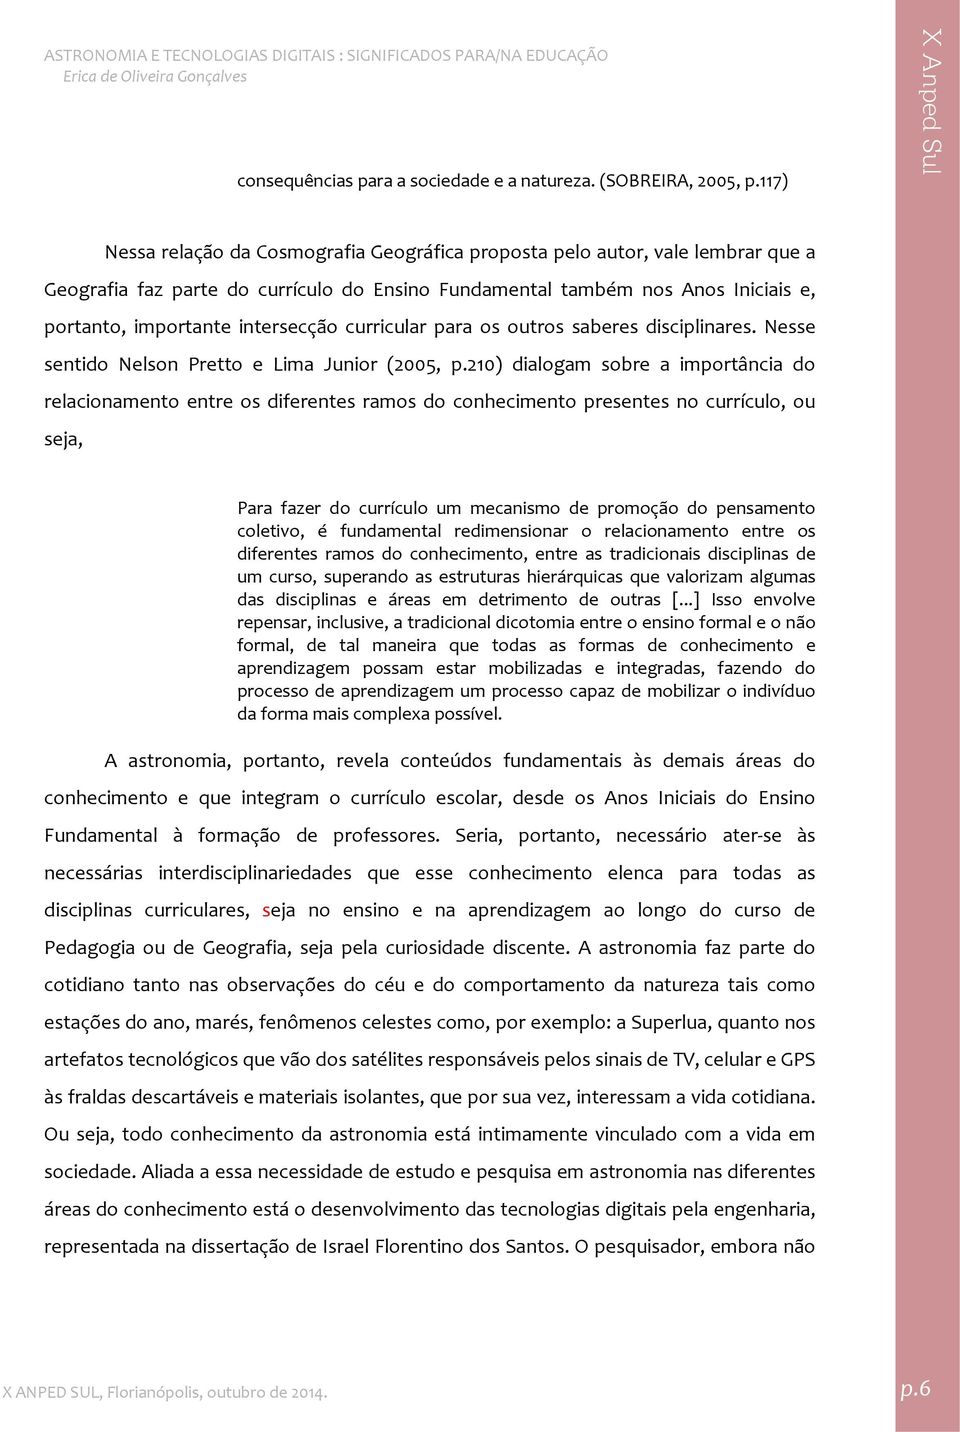 intersecção curricular para os outros saberes disciplinares. Nesse sentido Nelson Pretto e Lima Junior (2005, p.